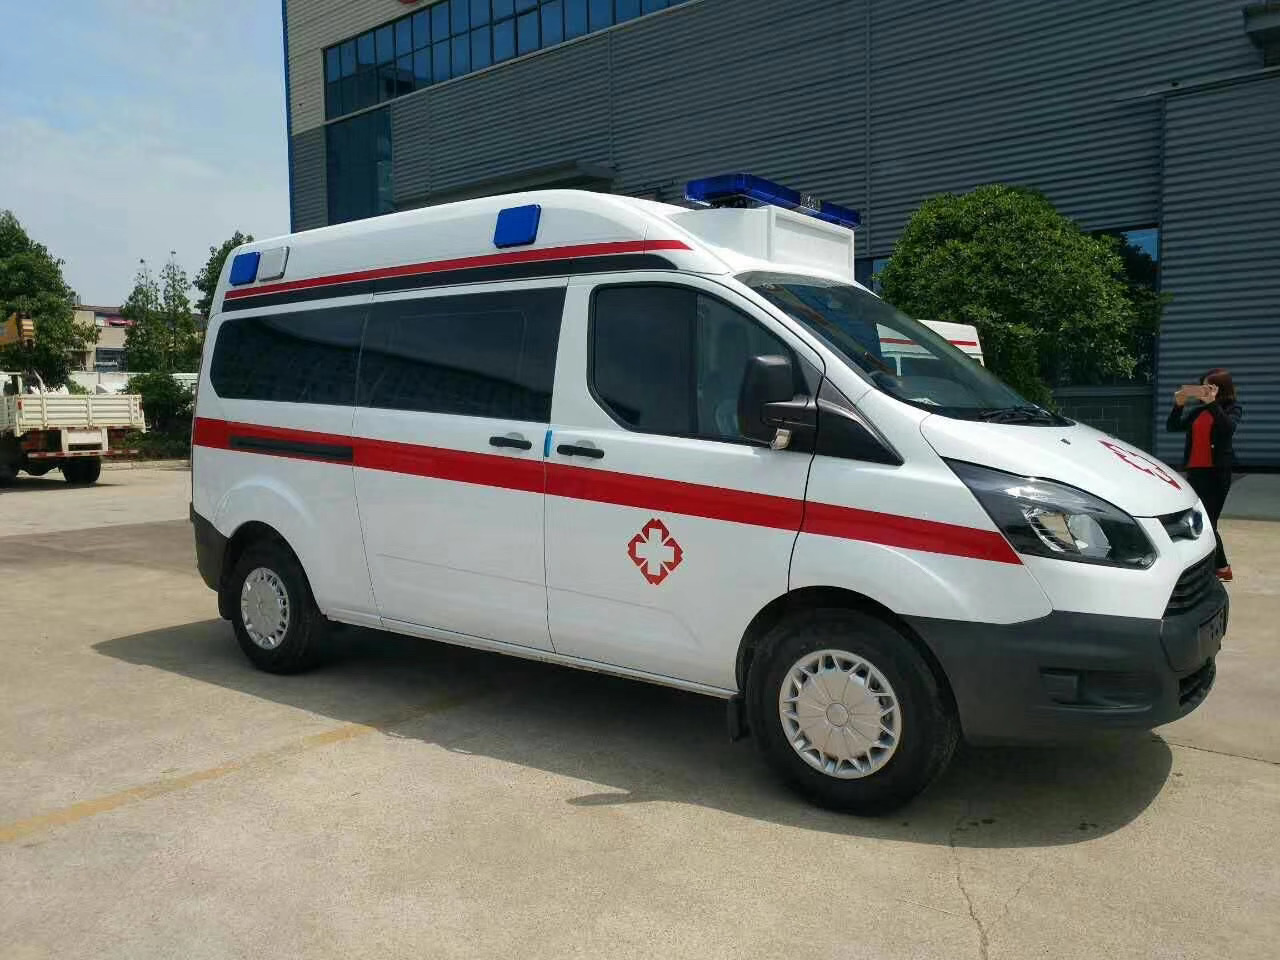 静乐县出院转院救护车